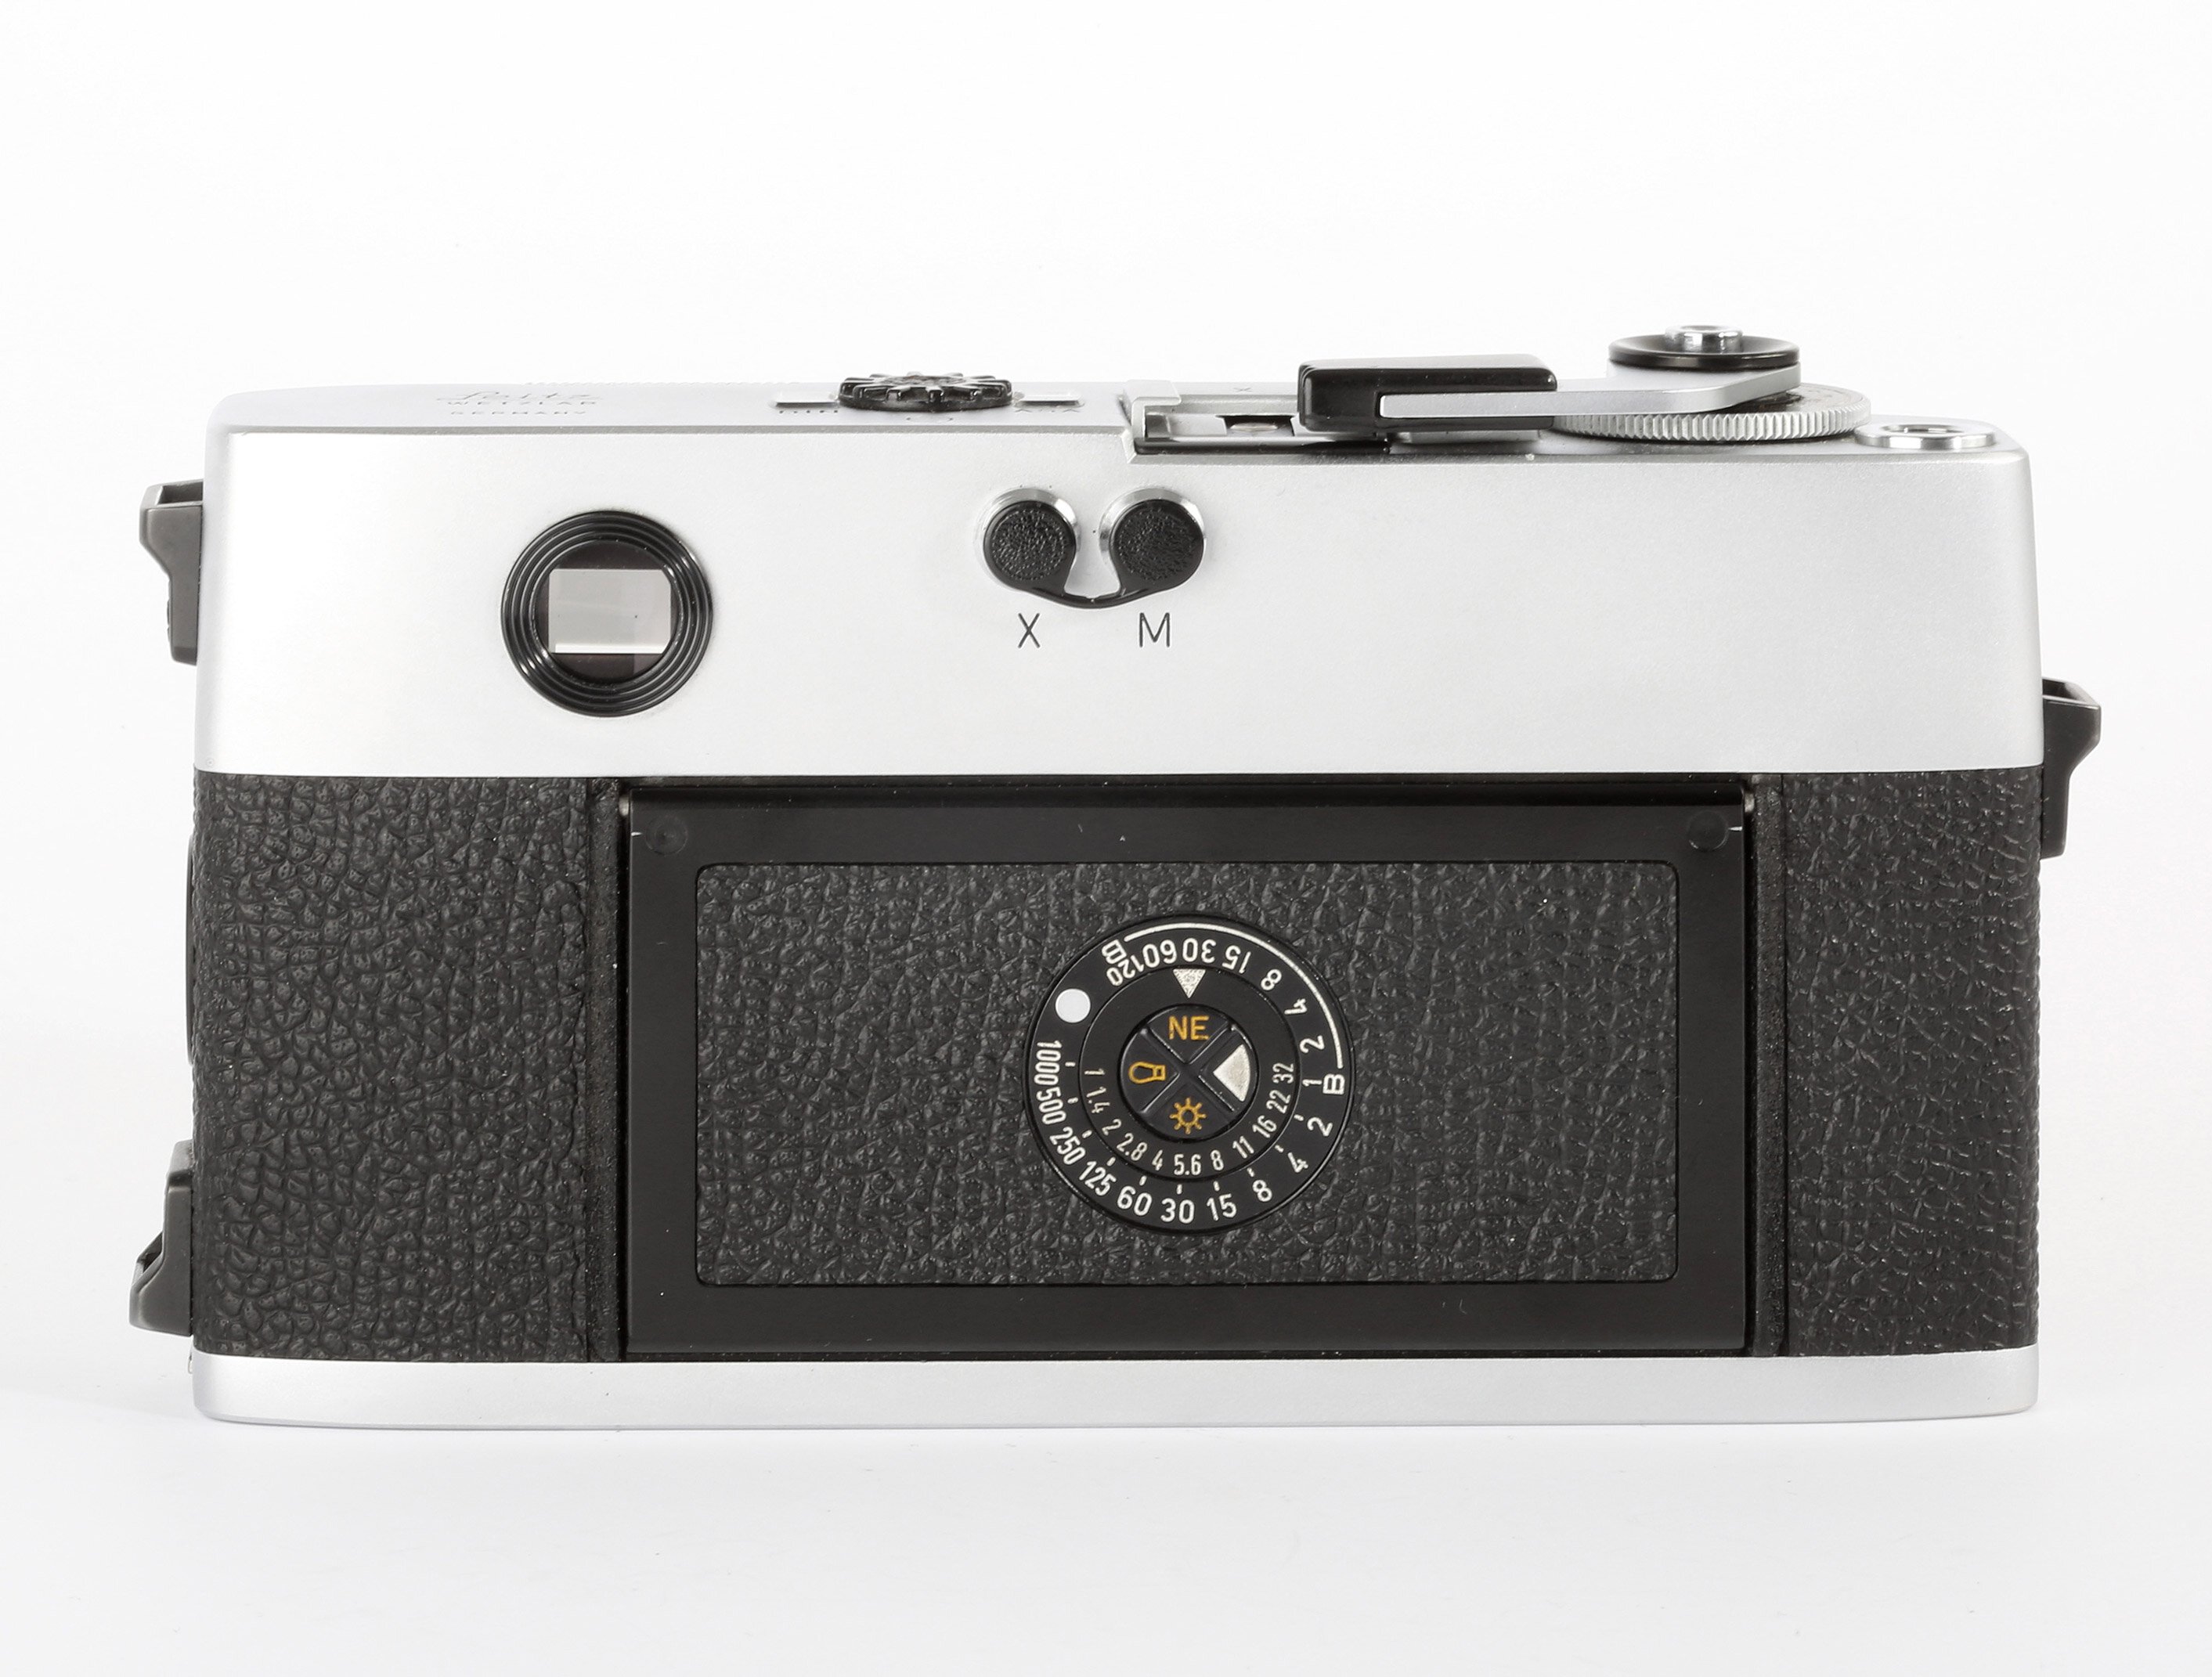 Leitz Leica M5